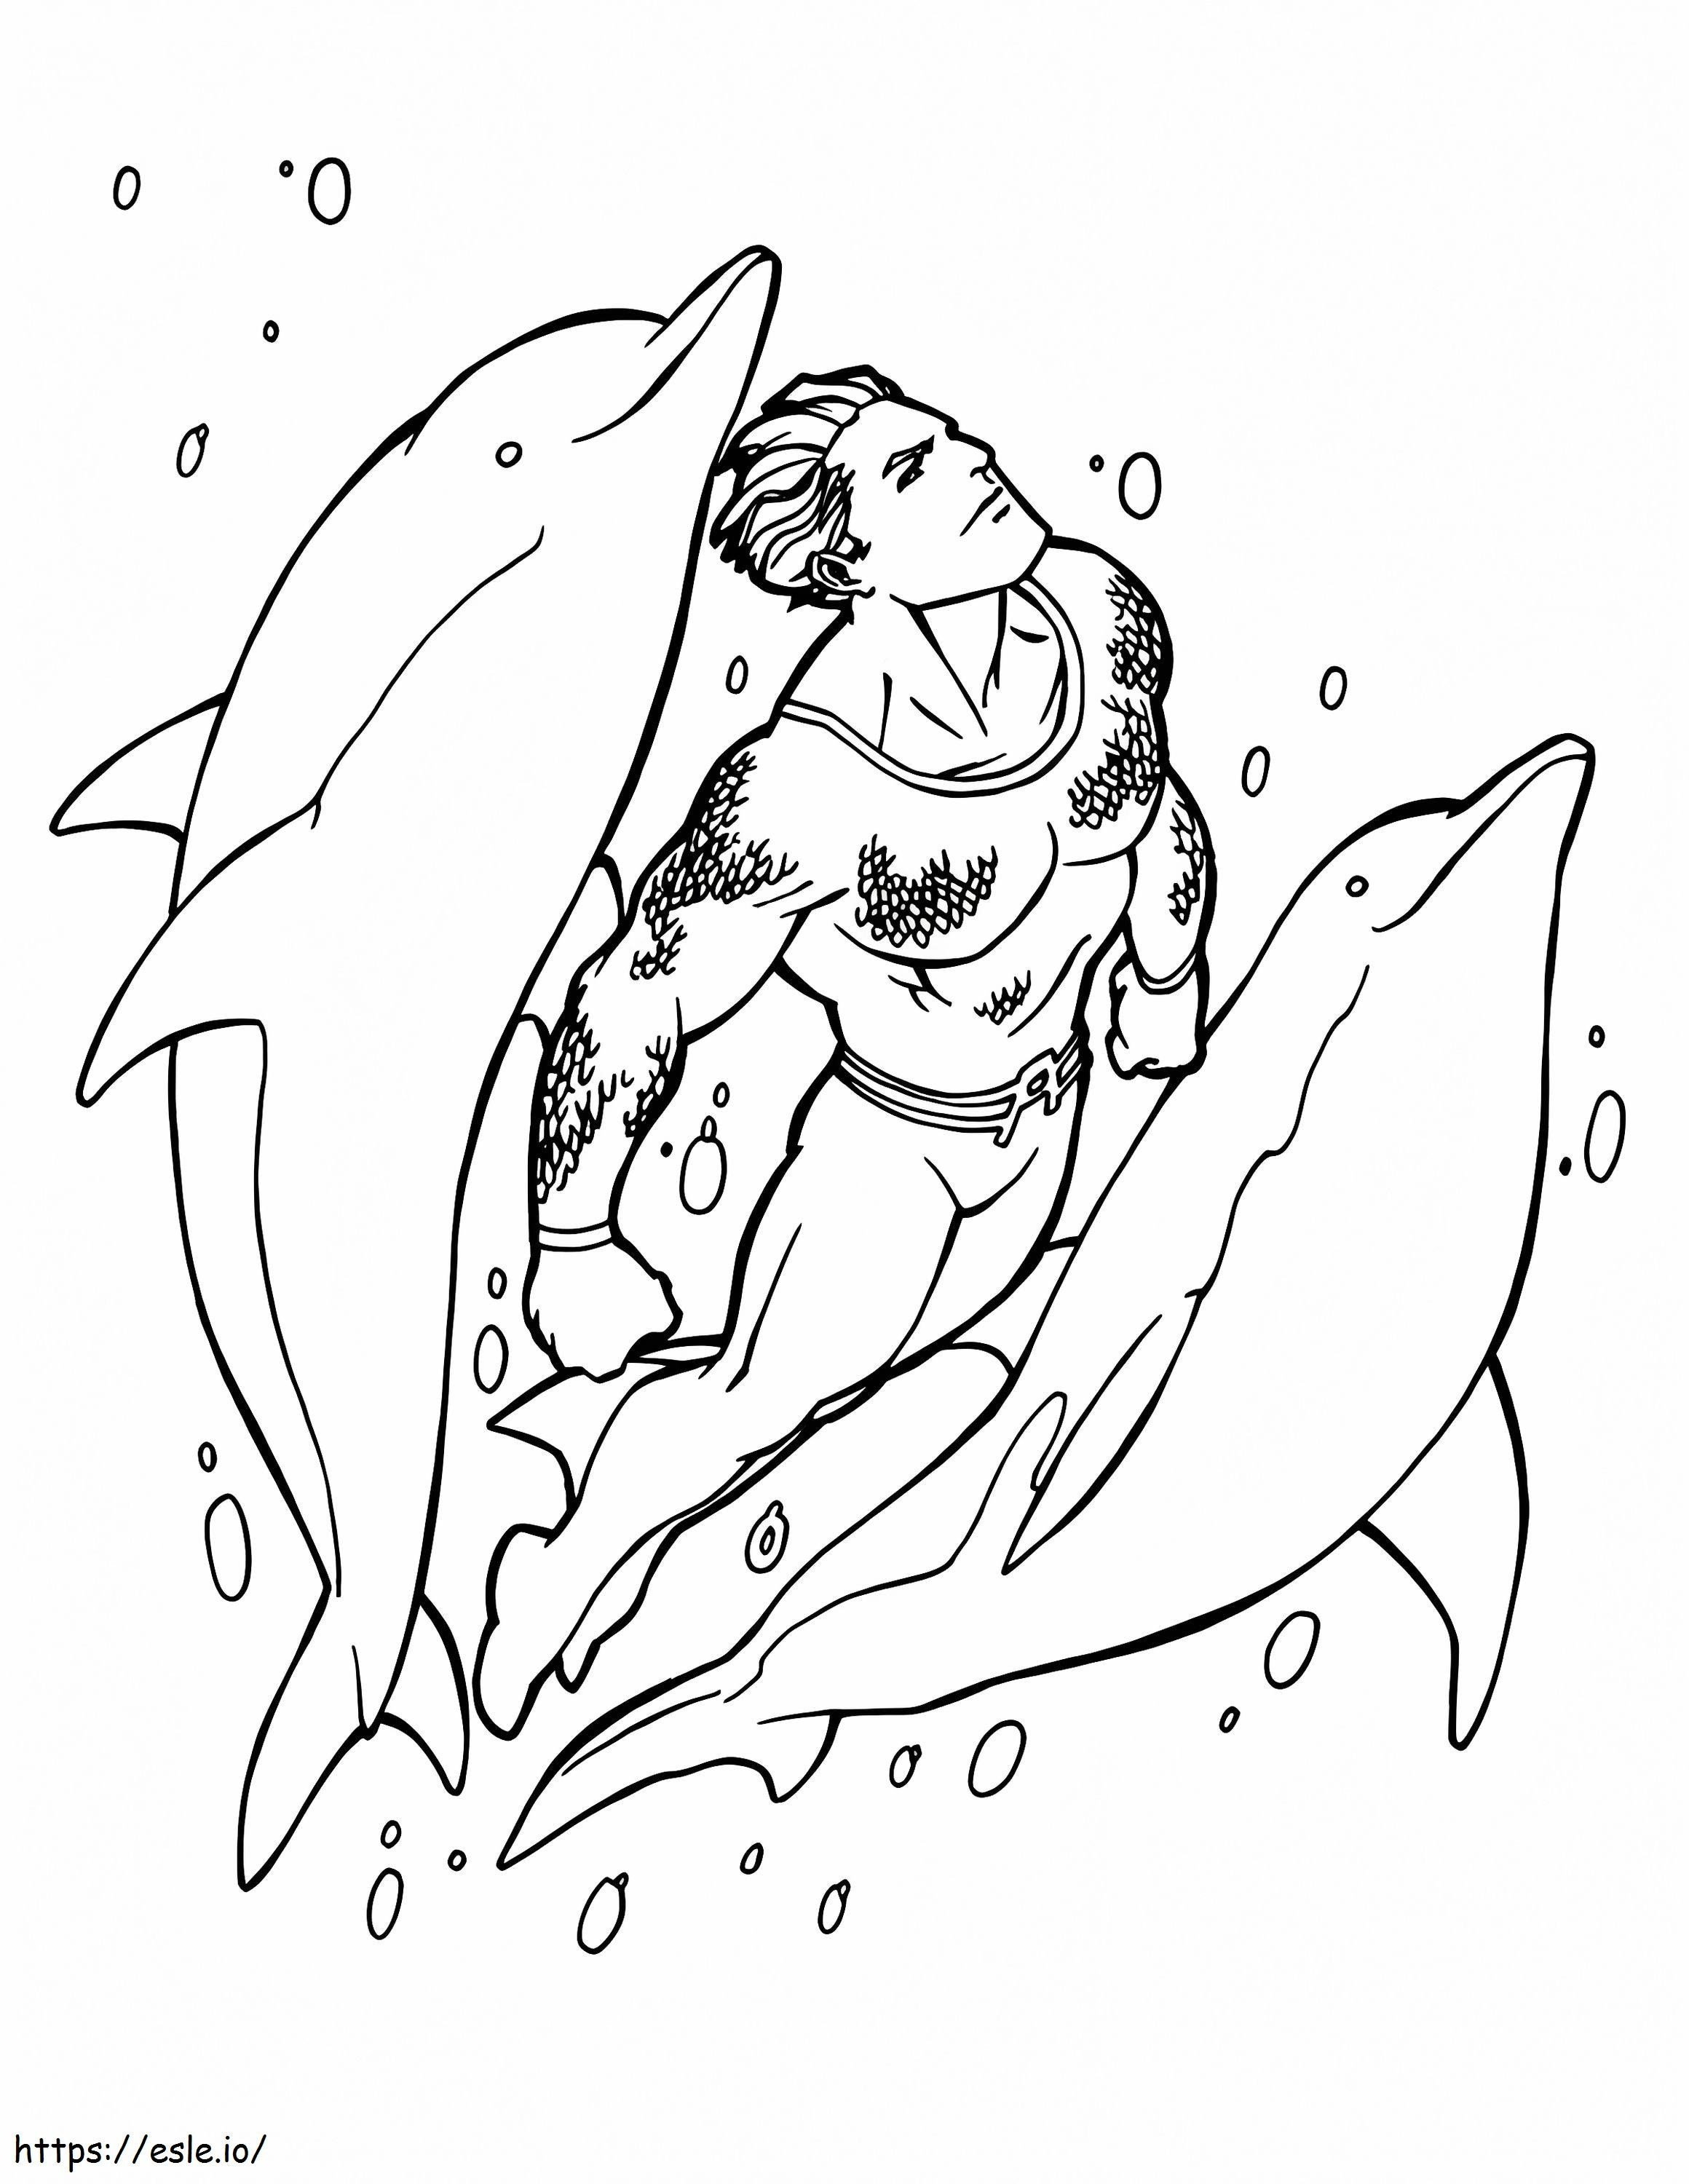 Aquaman nadando e dois golfinhos para colorir